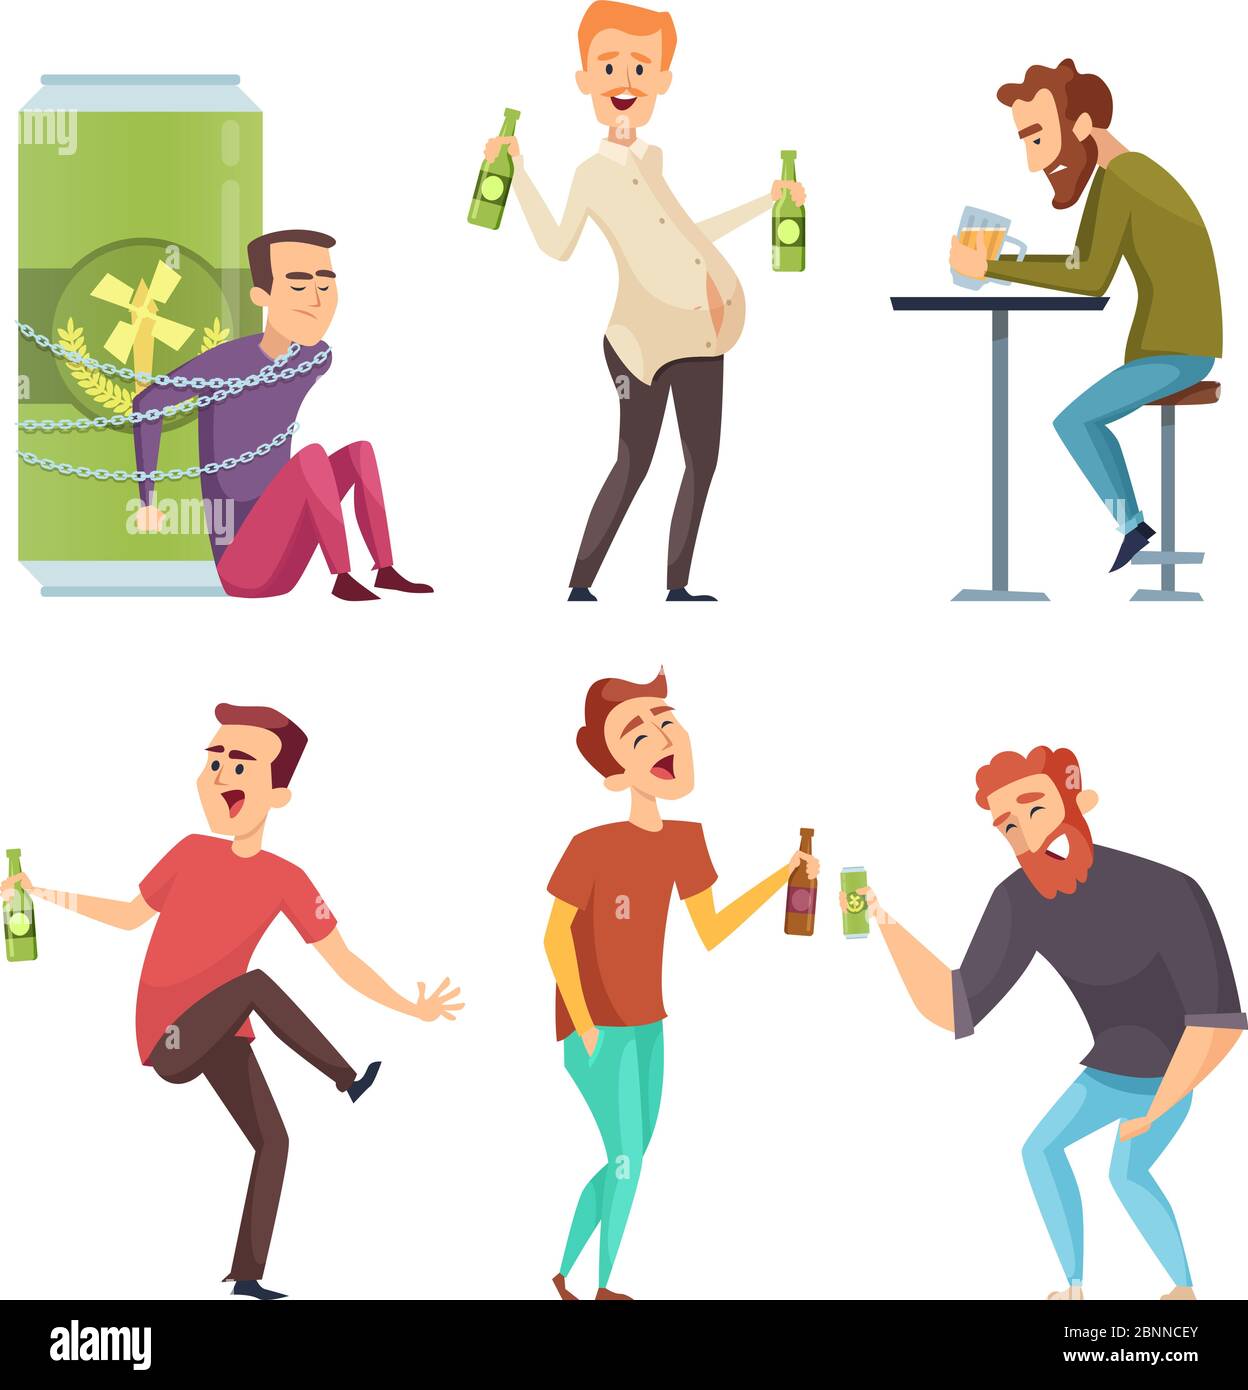 Alkoholischer Charakter. Missbrauch und süchtig Mann Drogen und Alkohol Vektor Cartoon Illustrationen Stock Vektor